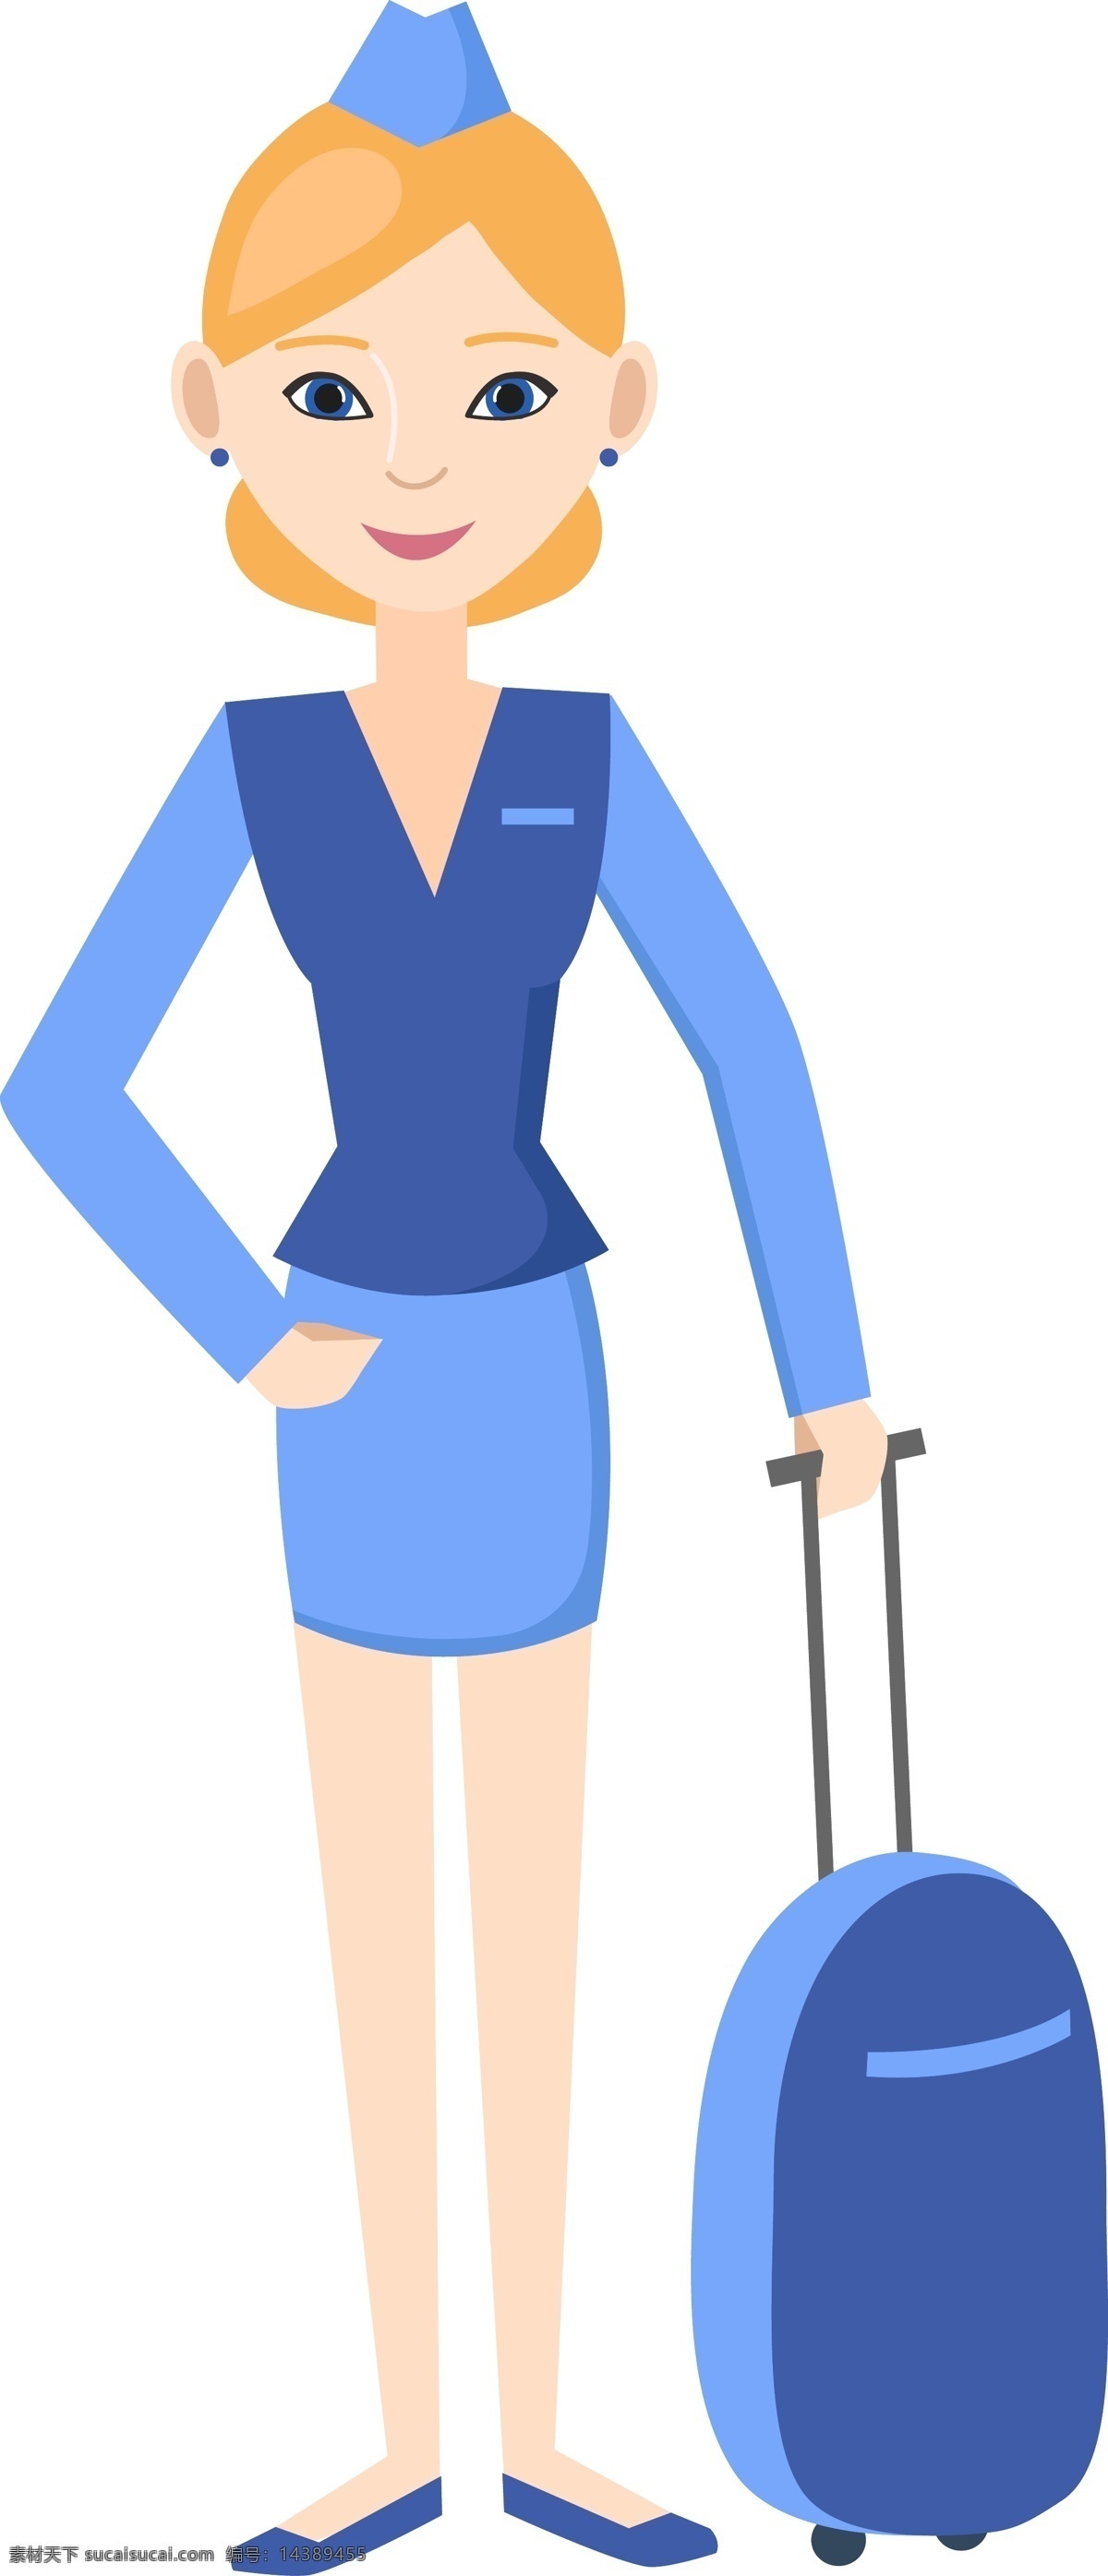 卡通空姐插画 空姐 空乘人员 蓝色制服 卡通人物 行李 人物图库 职业人物